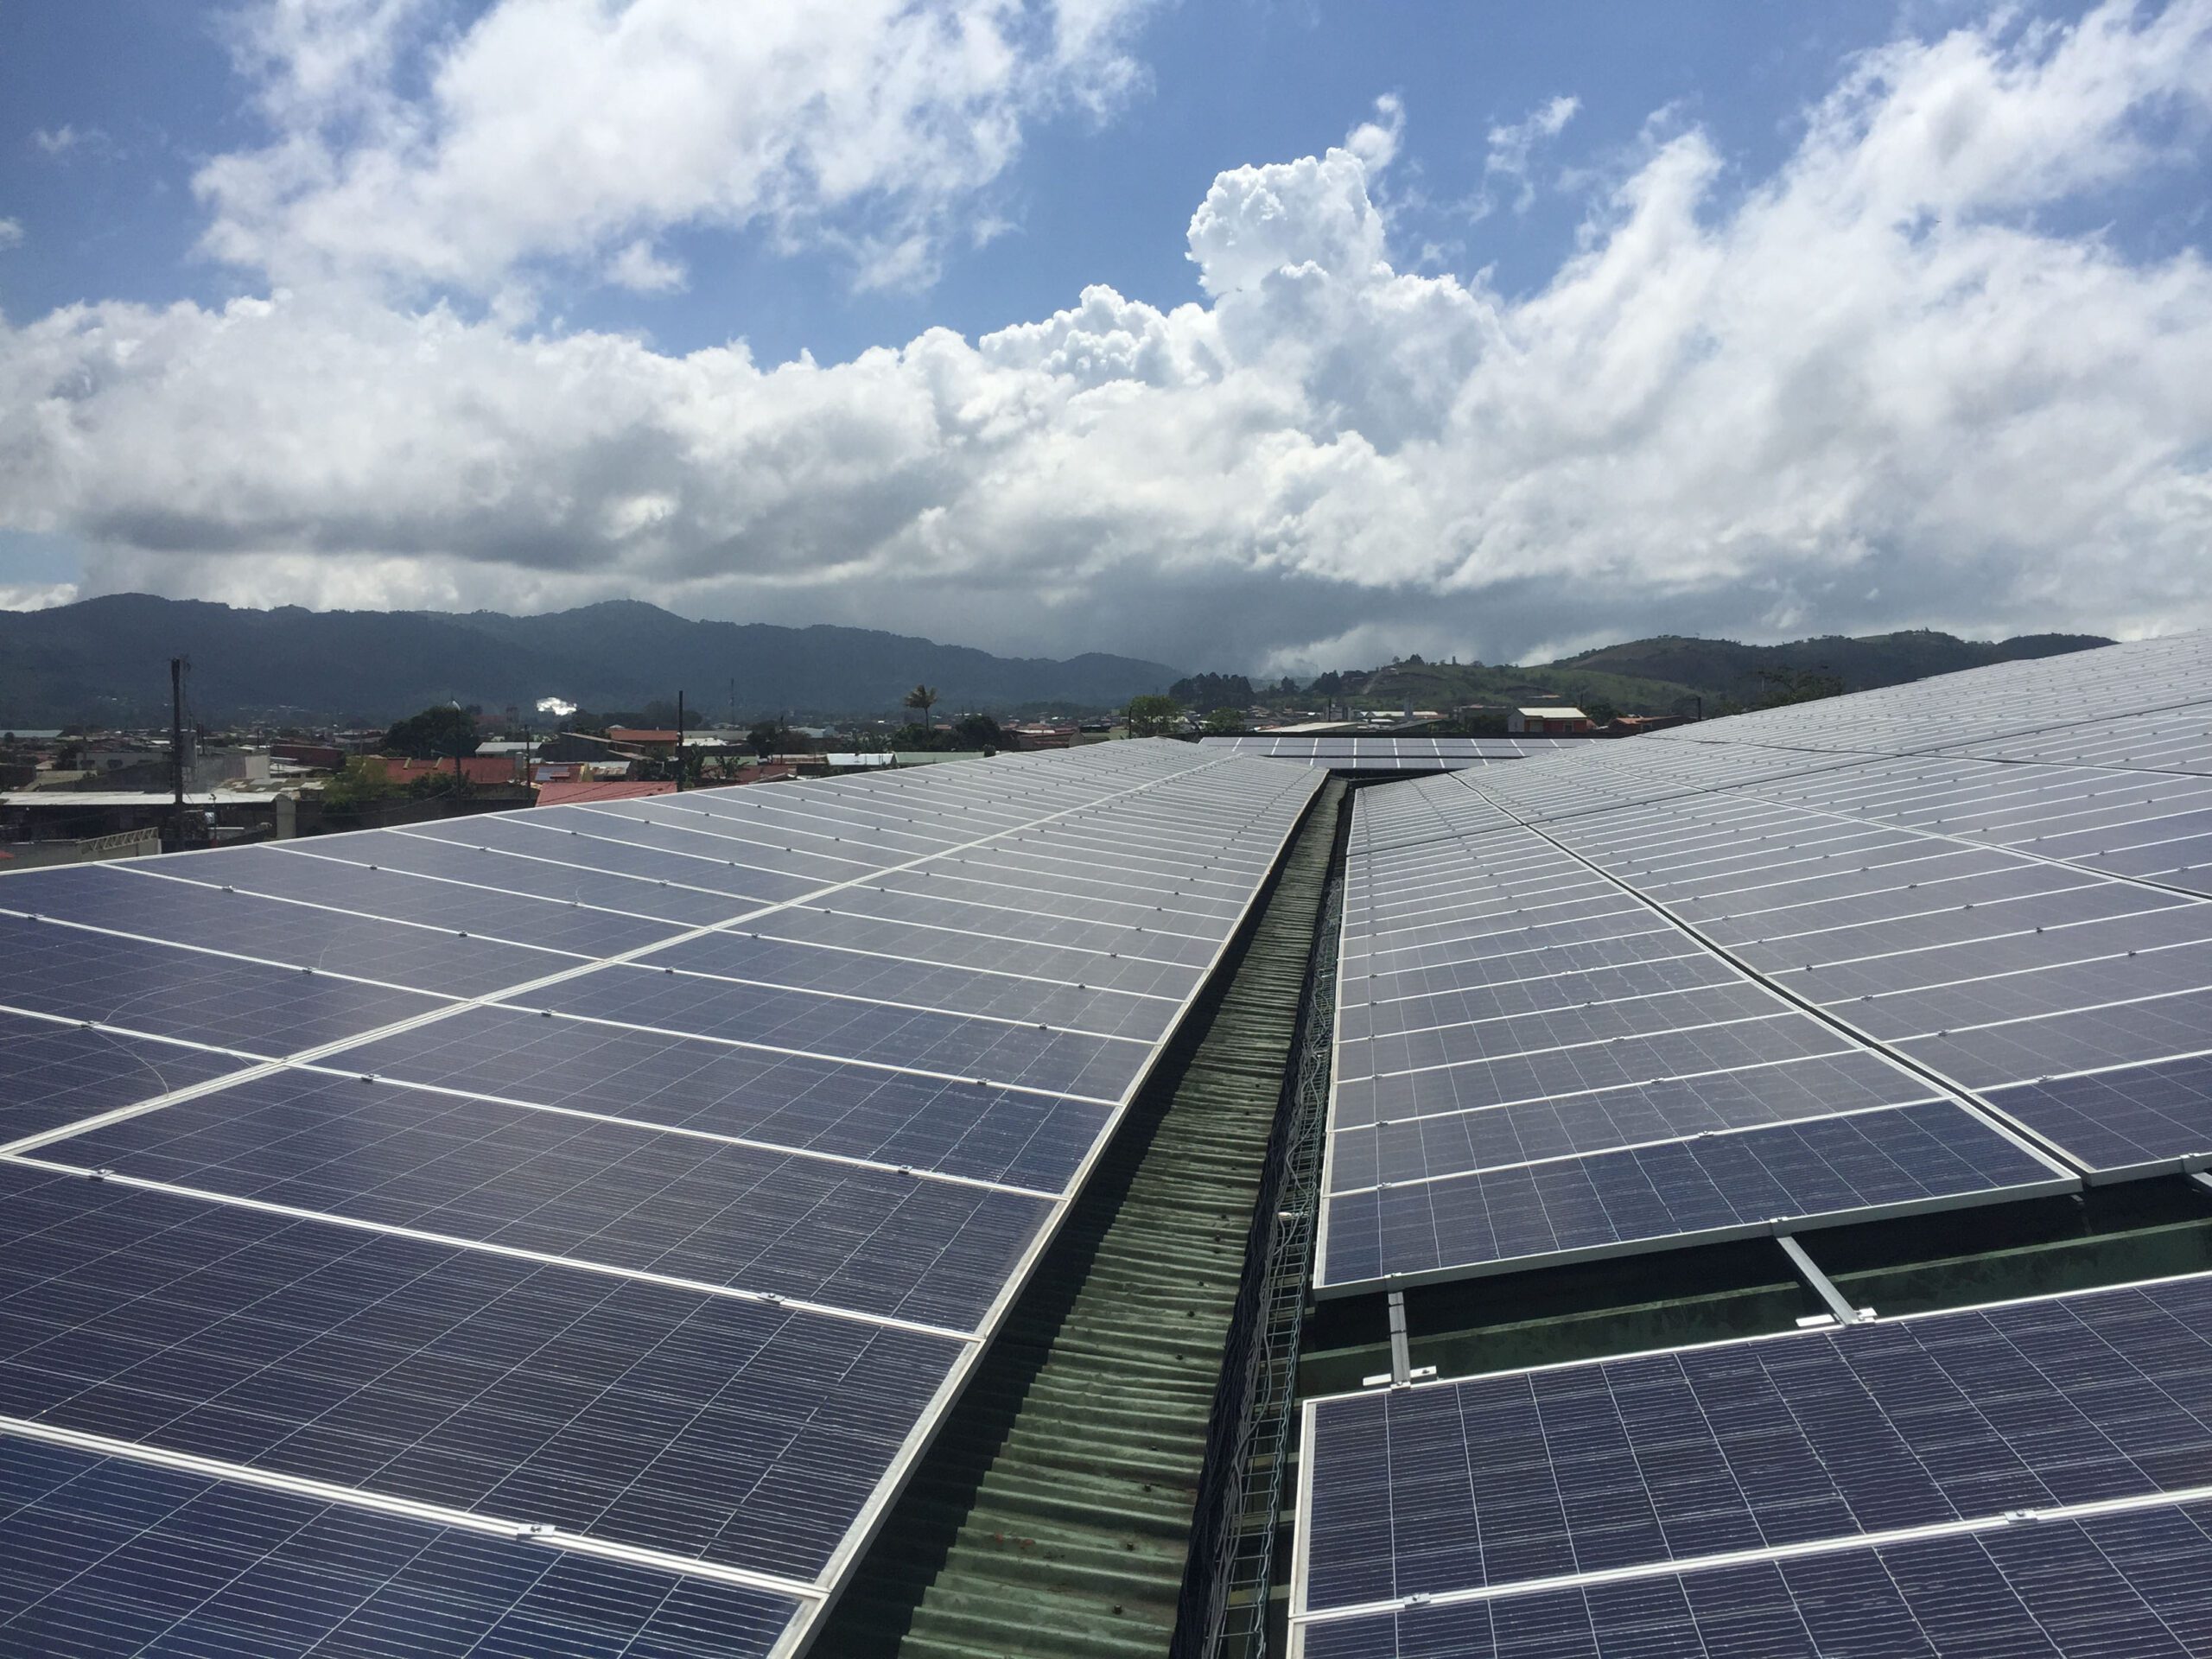 Sistema fotovoltaico sobre un techo en Costa Rica, bajo nubes.